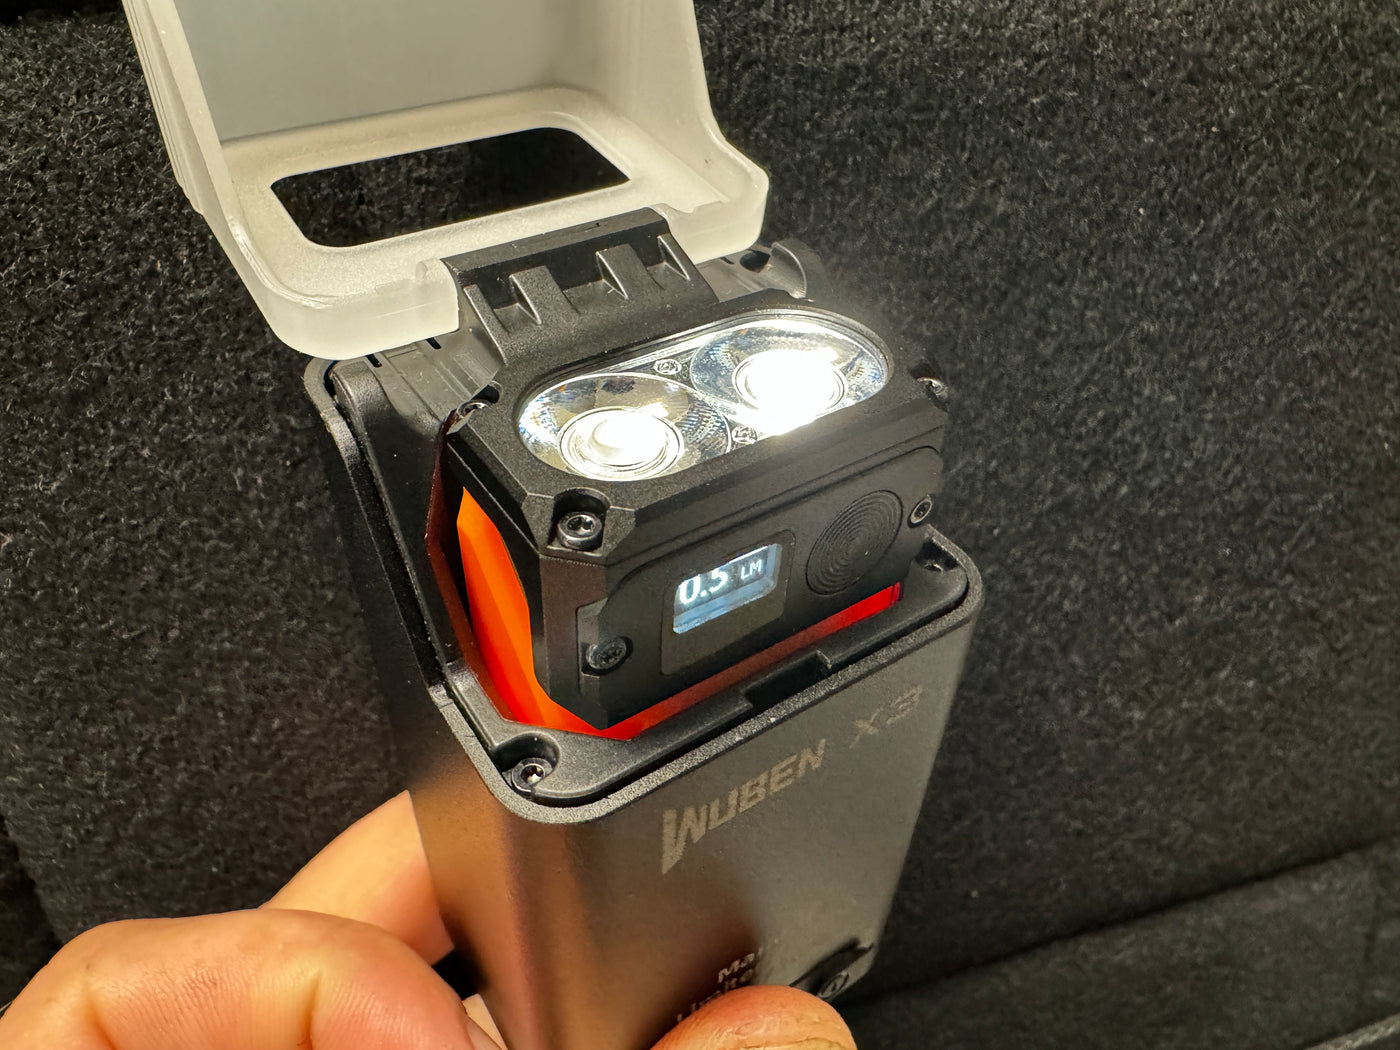 Wuben X3 Gen II - Beacon All-in-One Flashlight + ( Wireless ⚡️ Dock Included )